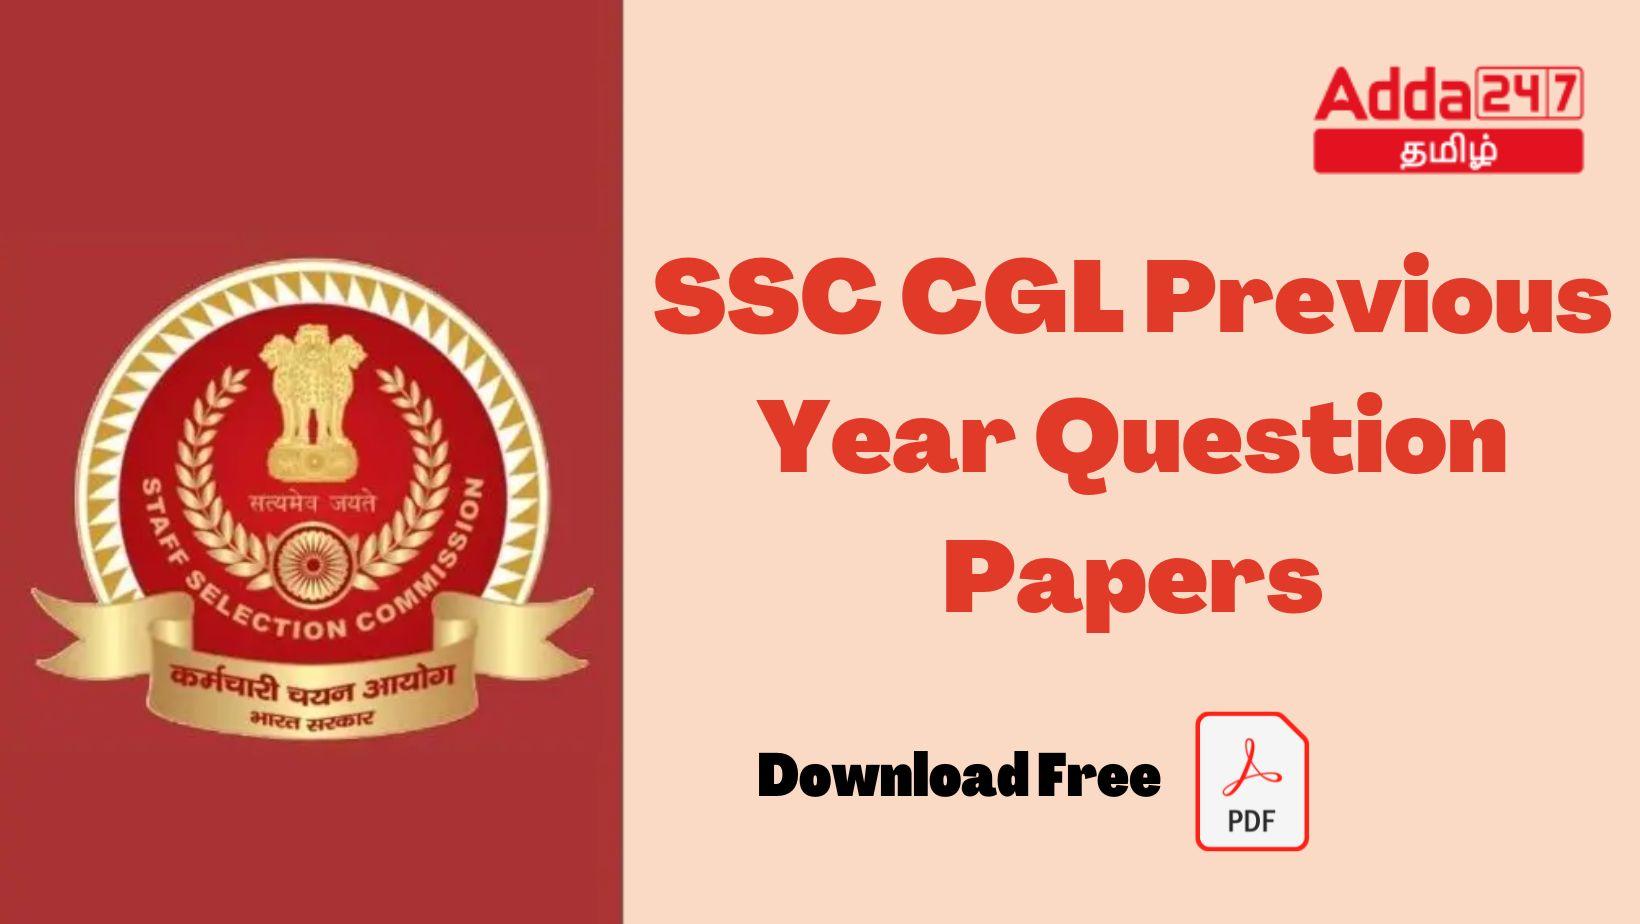 SSC CGL முந்தைய ஆண்டு வினாத்தாள்கள், வினாத்தாள் மற்றும் தீர்வு PDF பதிவிறக்கம்_30.1